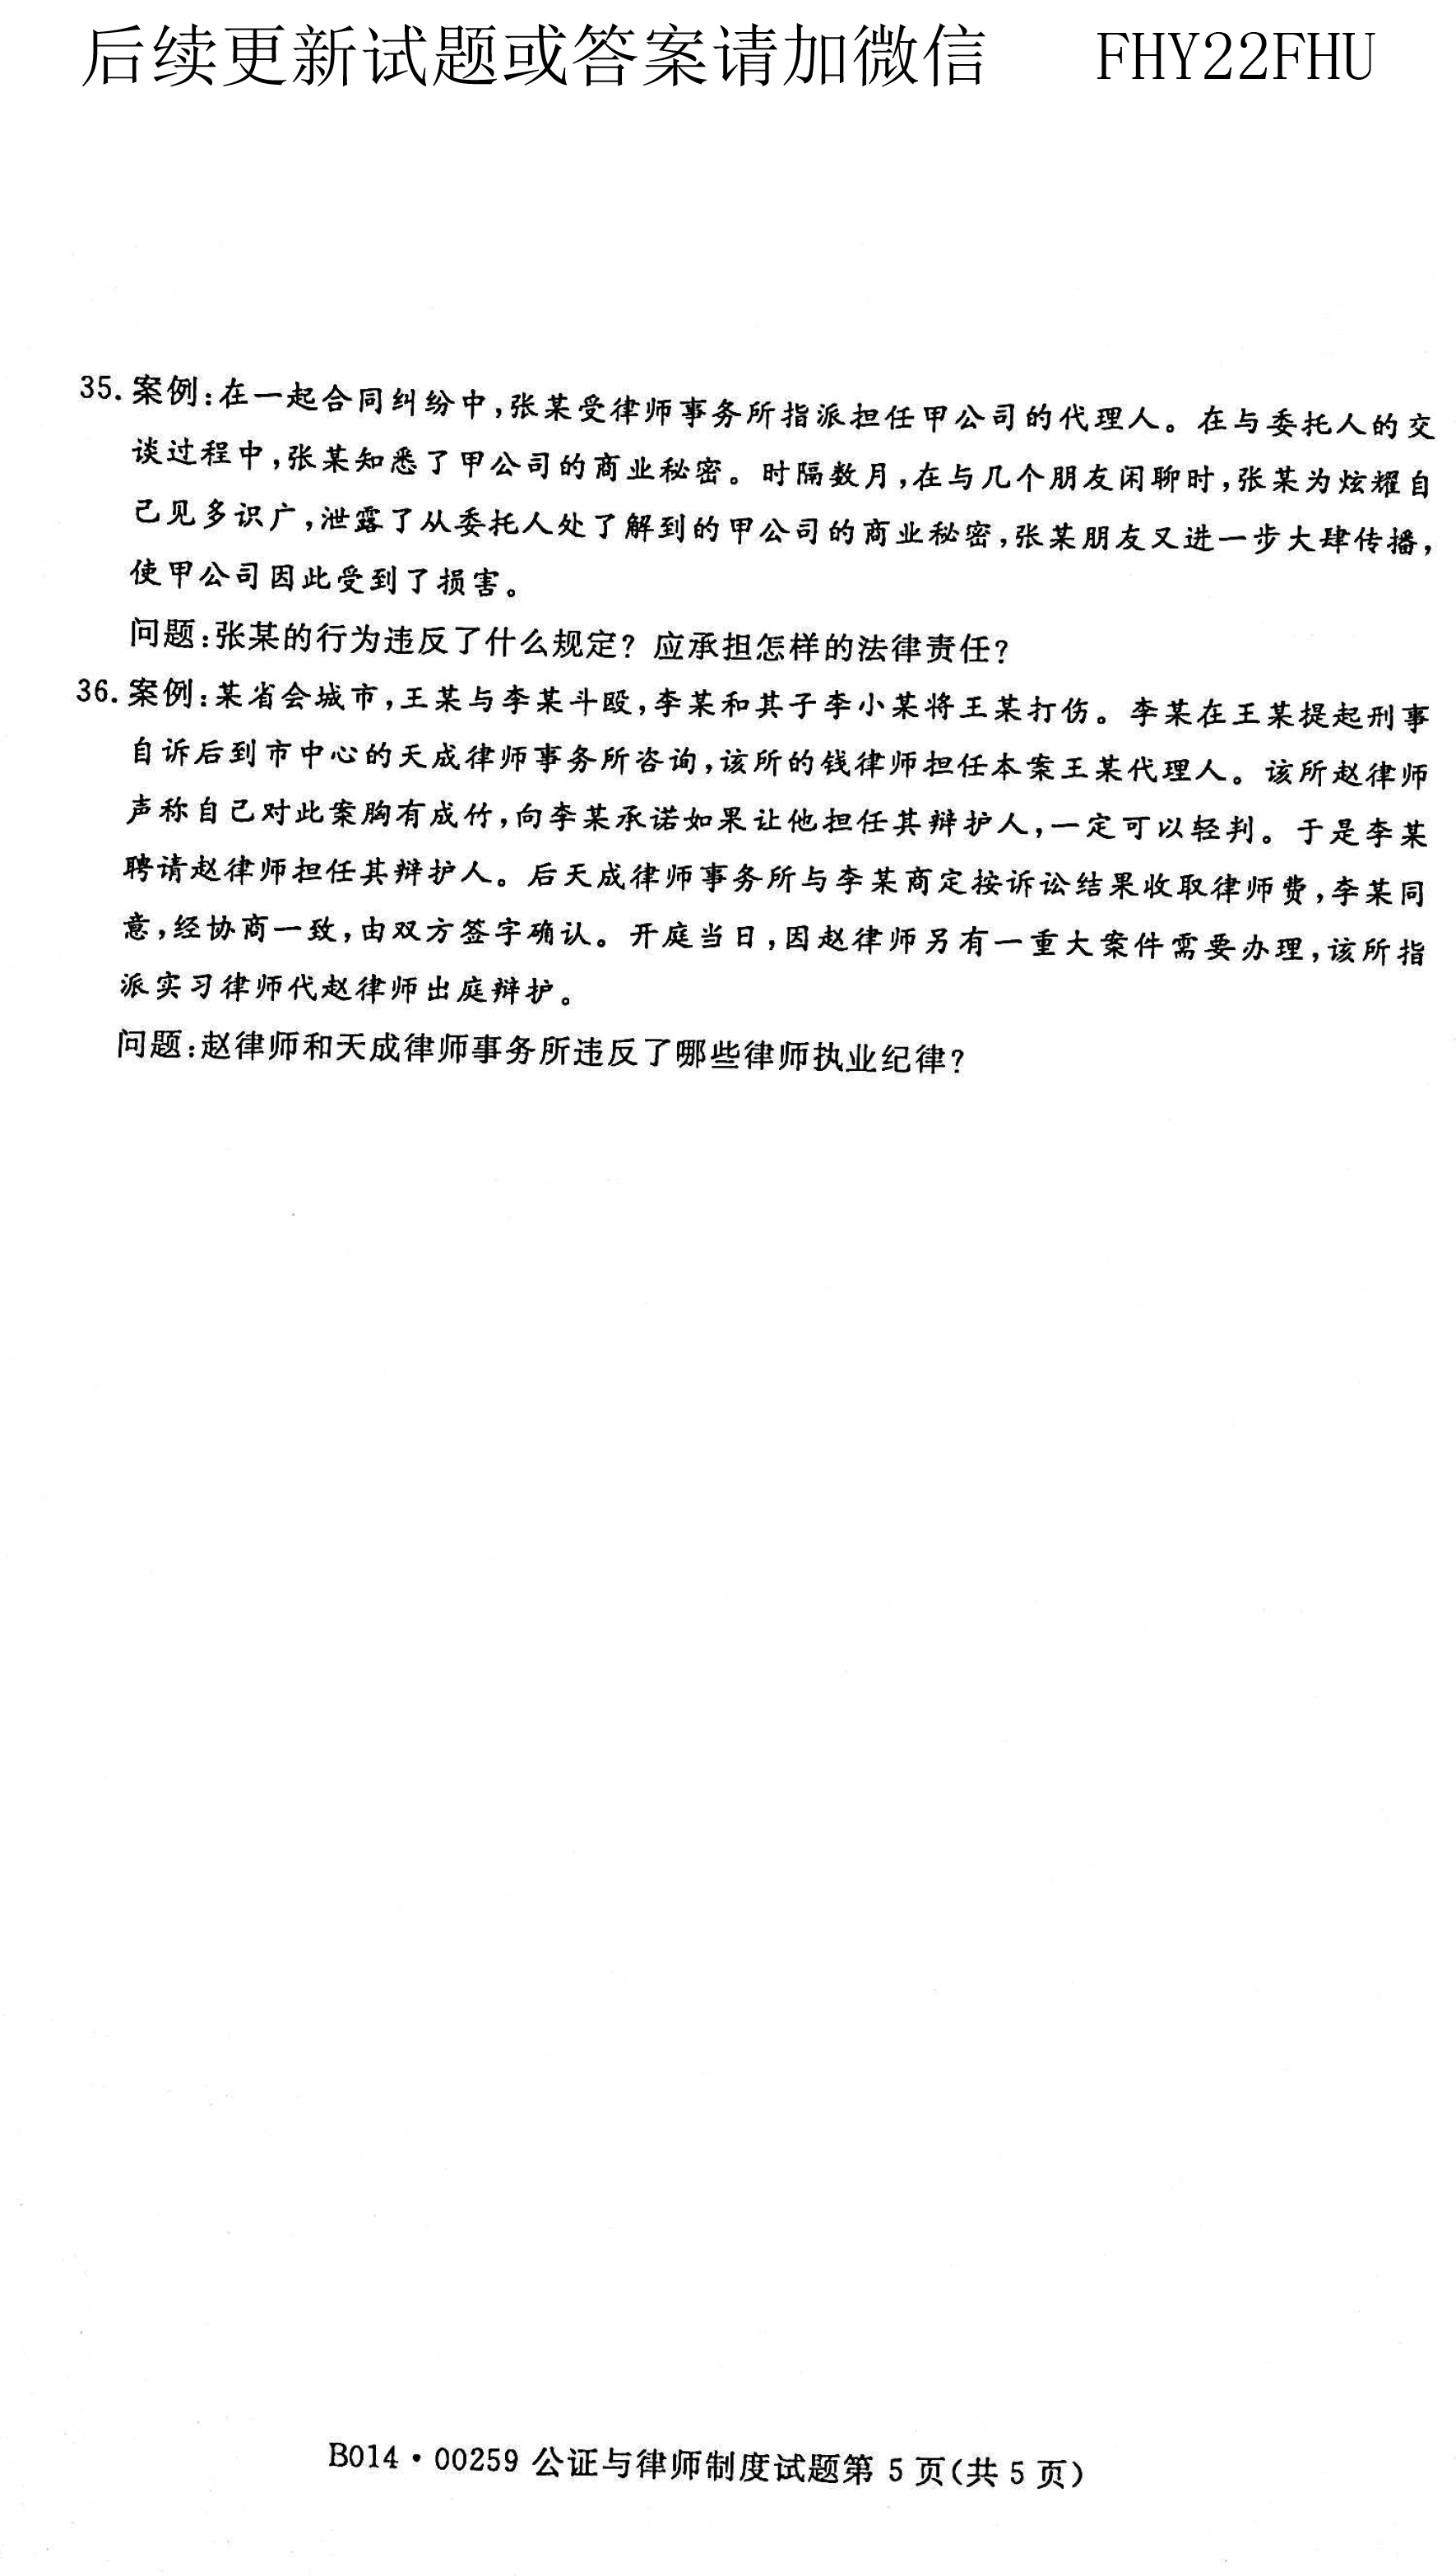 贵州省2021年04月自考00259公证与律师制度真题及答案